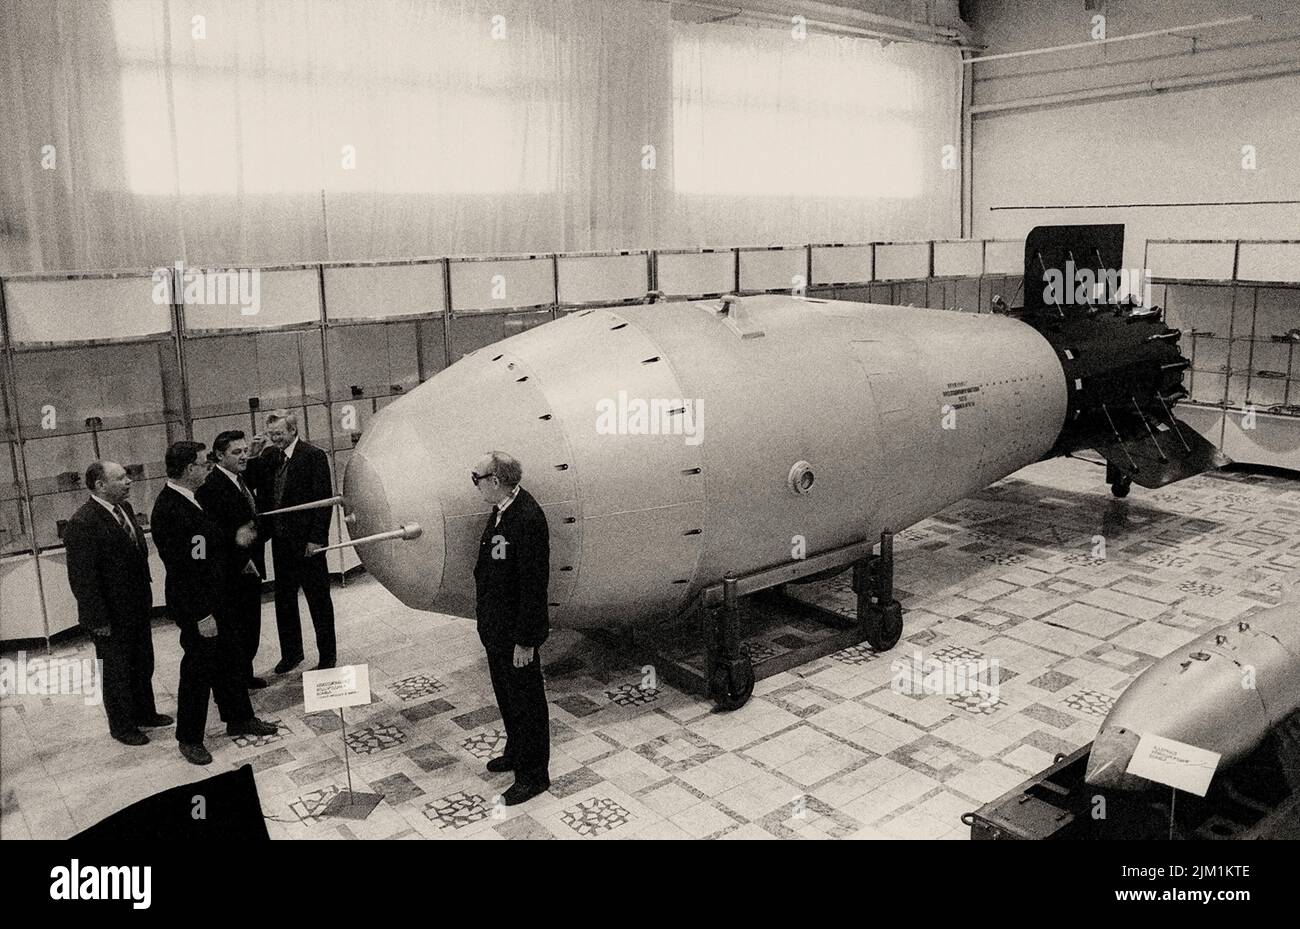 Ссср было создано атомное оружие. Ан602 термоядерная бомба — «царь-бомба» (58,6 мегатонн). Водородная бомба Сахарова 1953. Царь бомба 100 мегатонн.